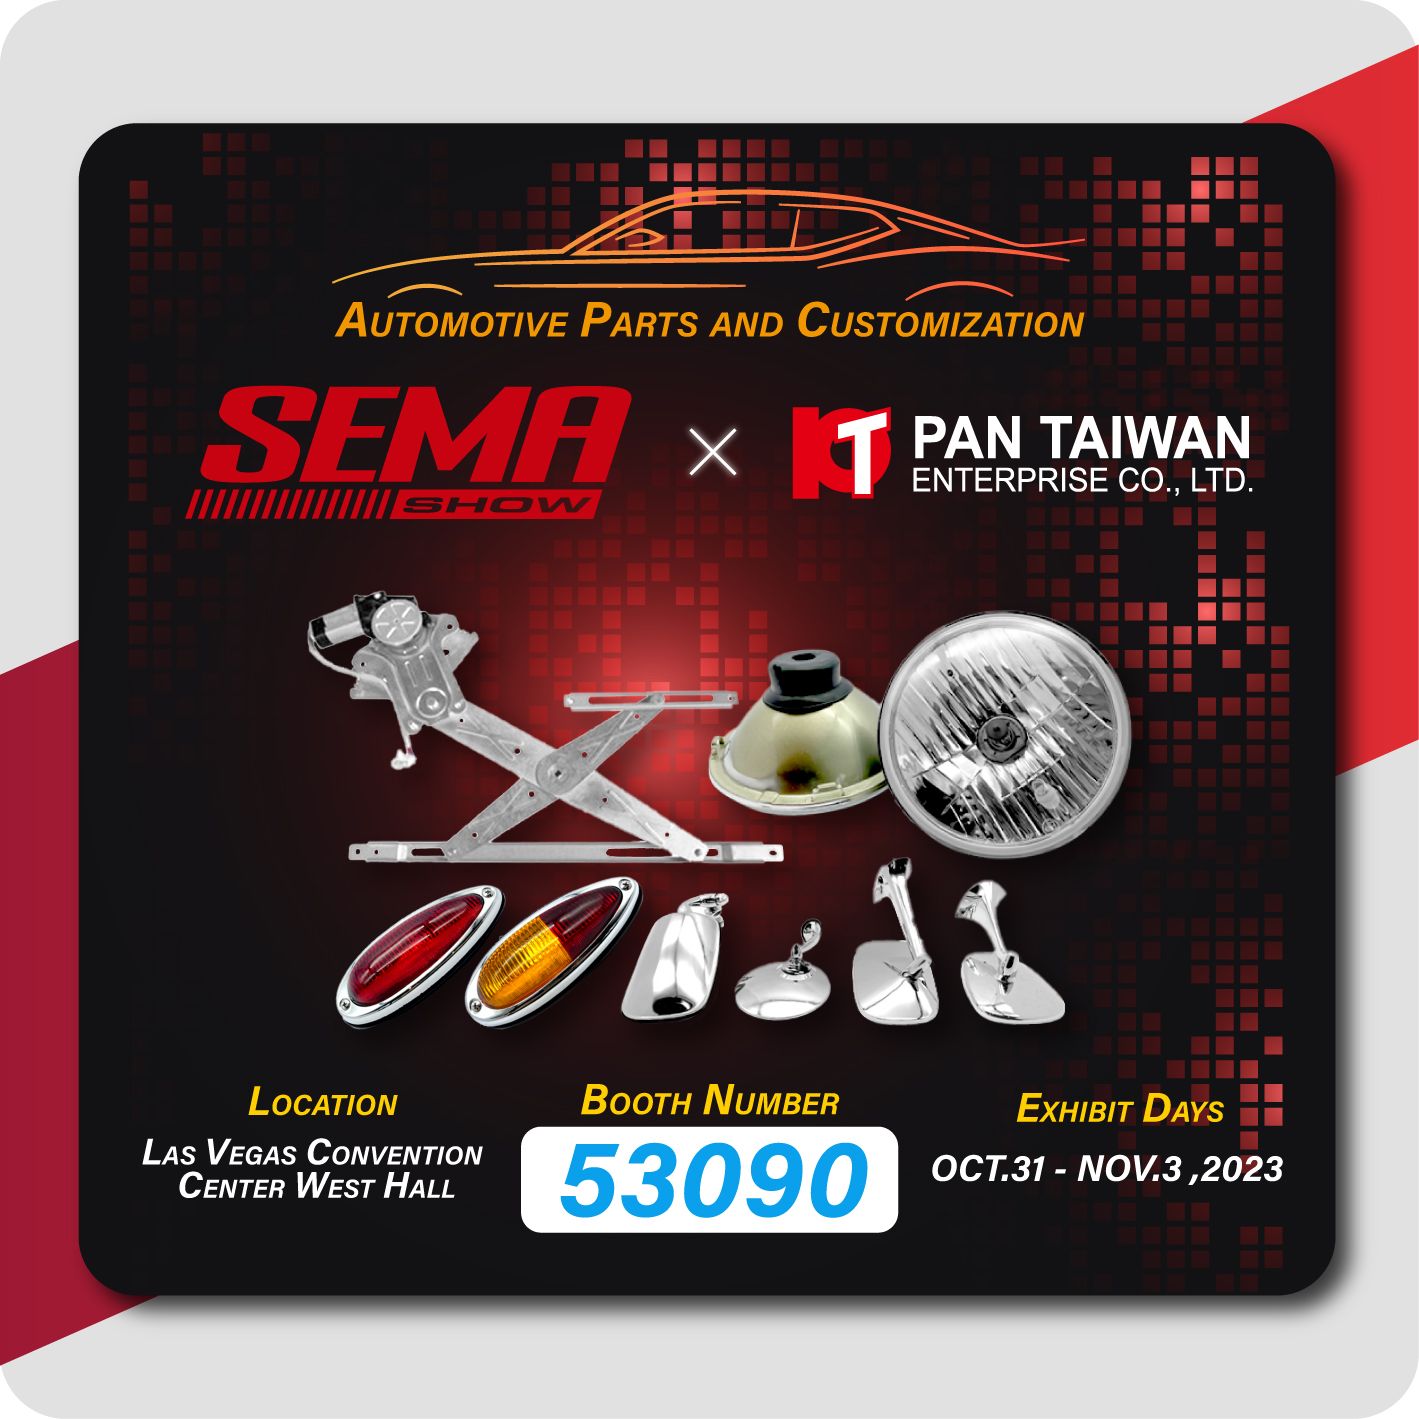 Pan Taiwan partecipa a SEMA 2023 e dimostra il nostro regolatore di finestra, pezzi per auto d'epoca e servizio personalizzato sia per auto che per auto ibride elettriche a tutti i nostri clienti.